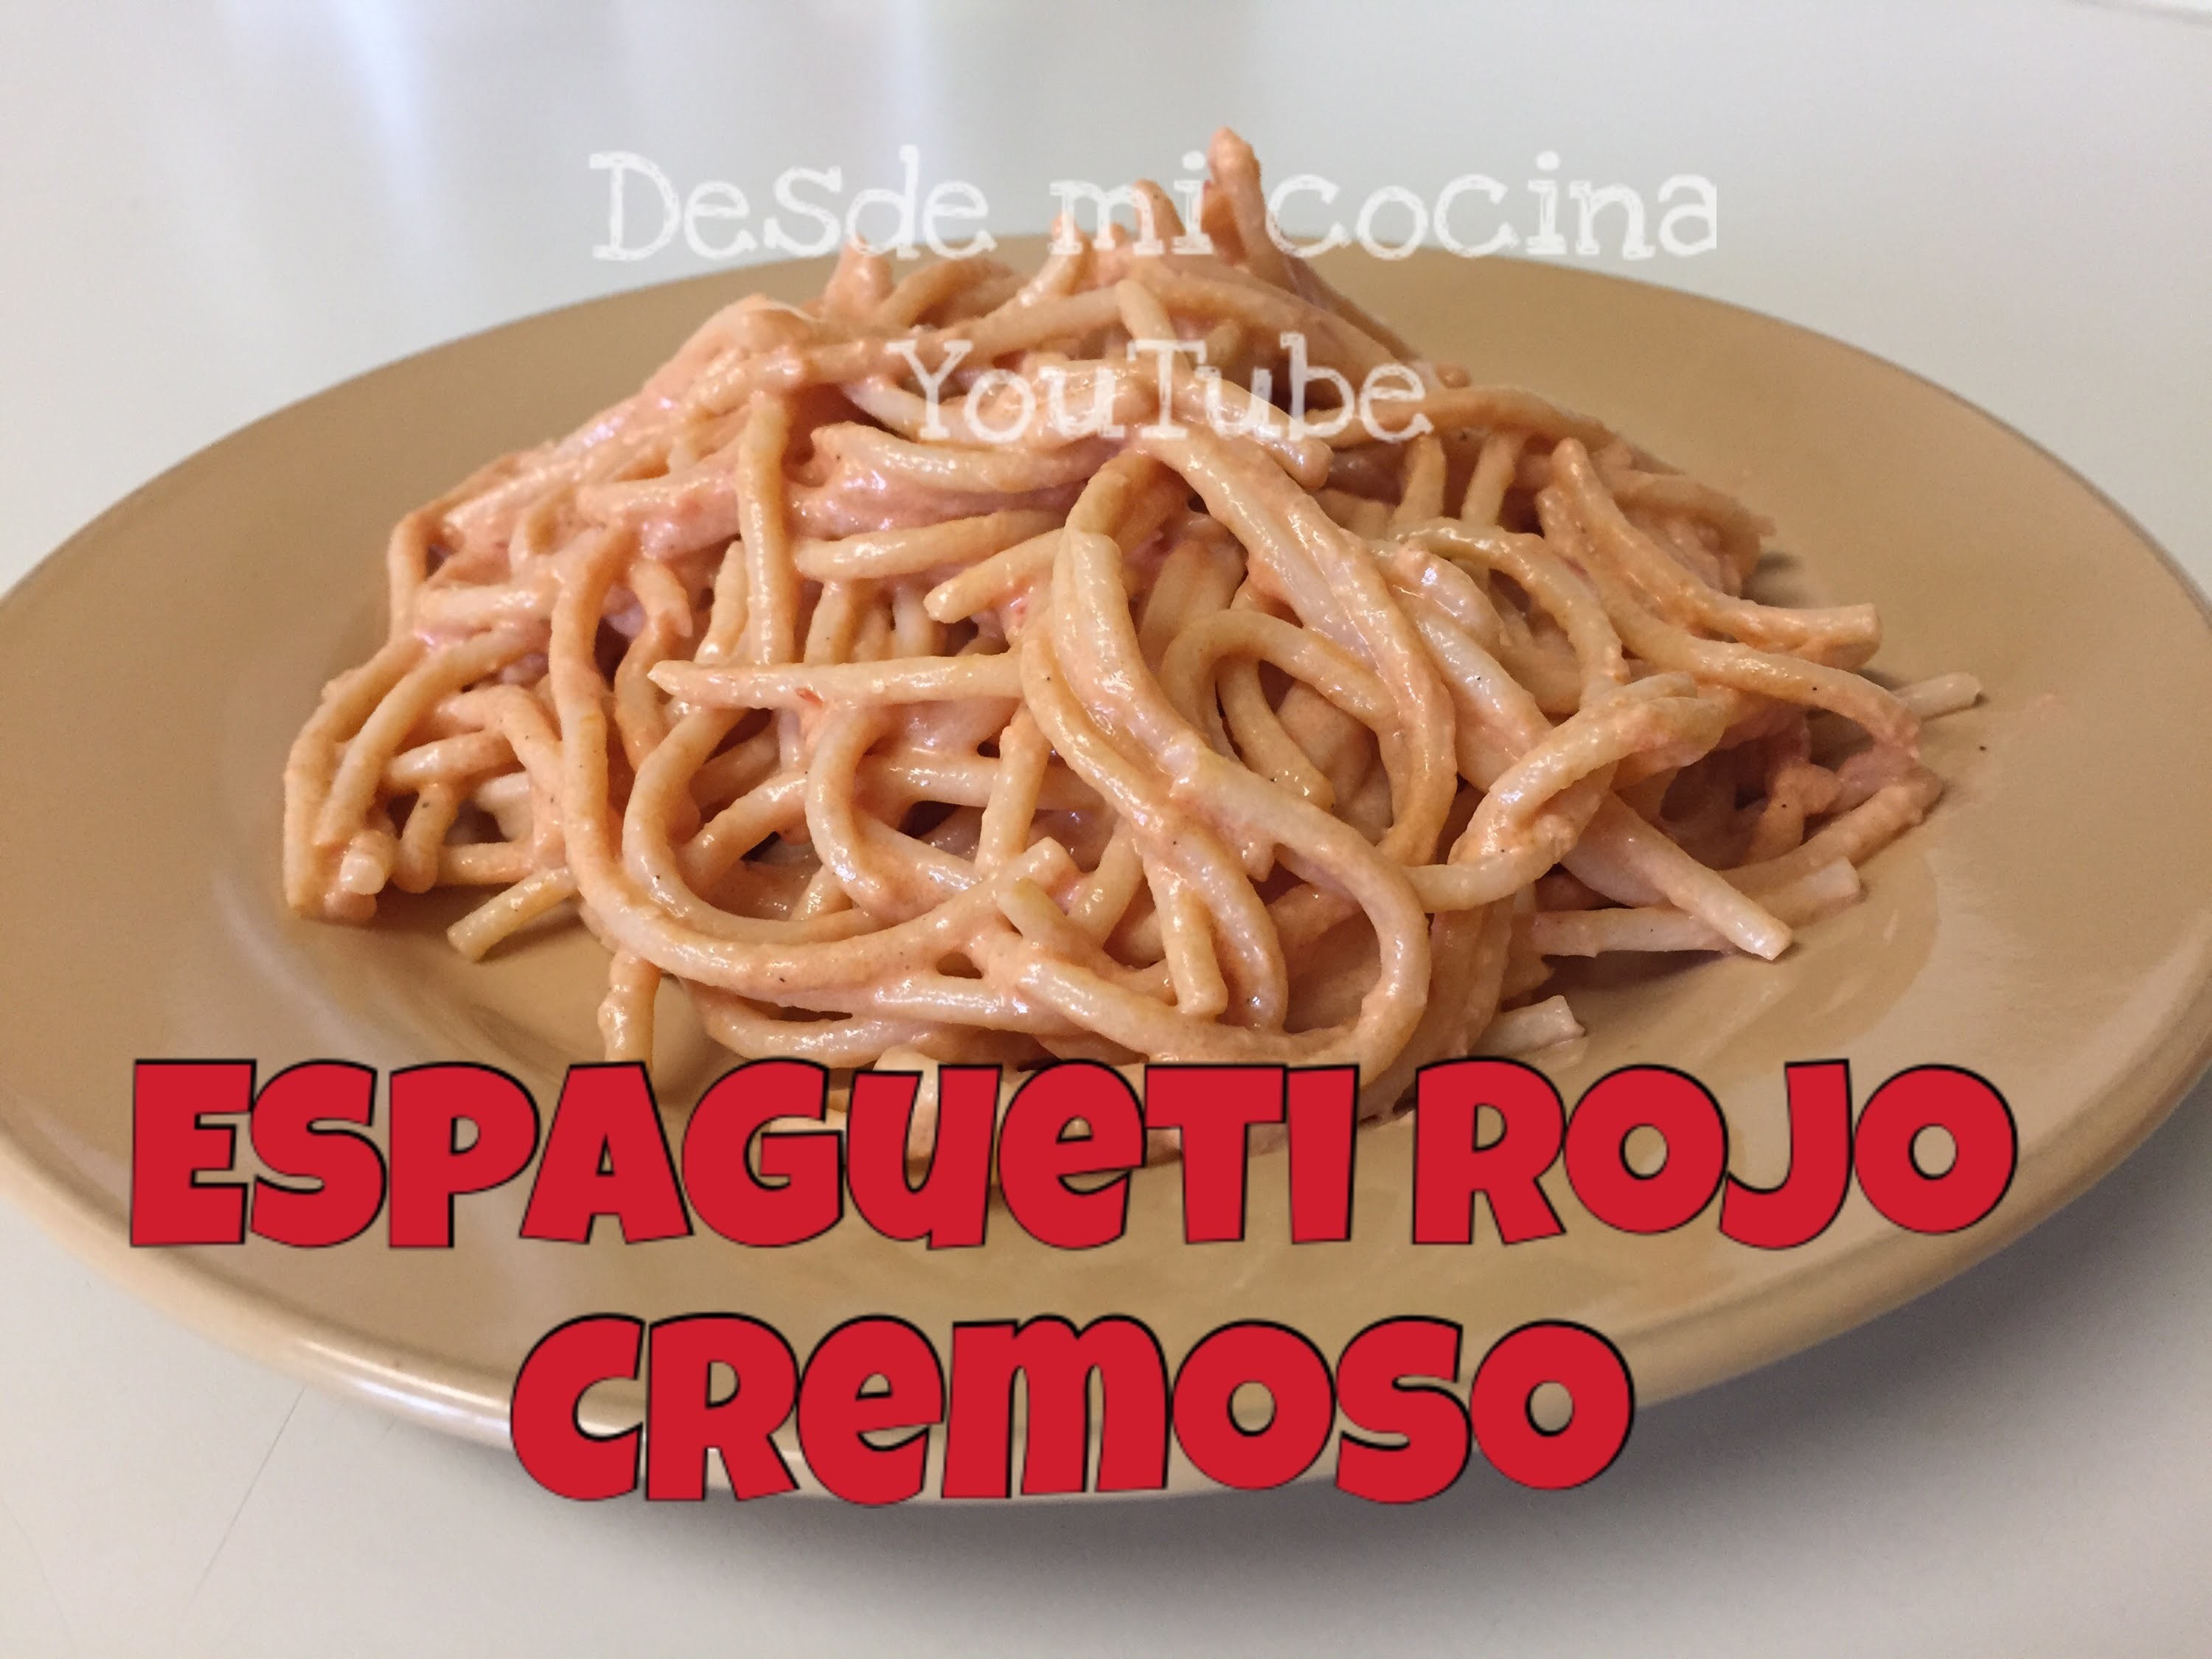 Spaghetti rojo mexicano